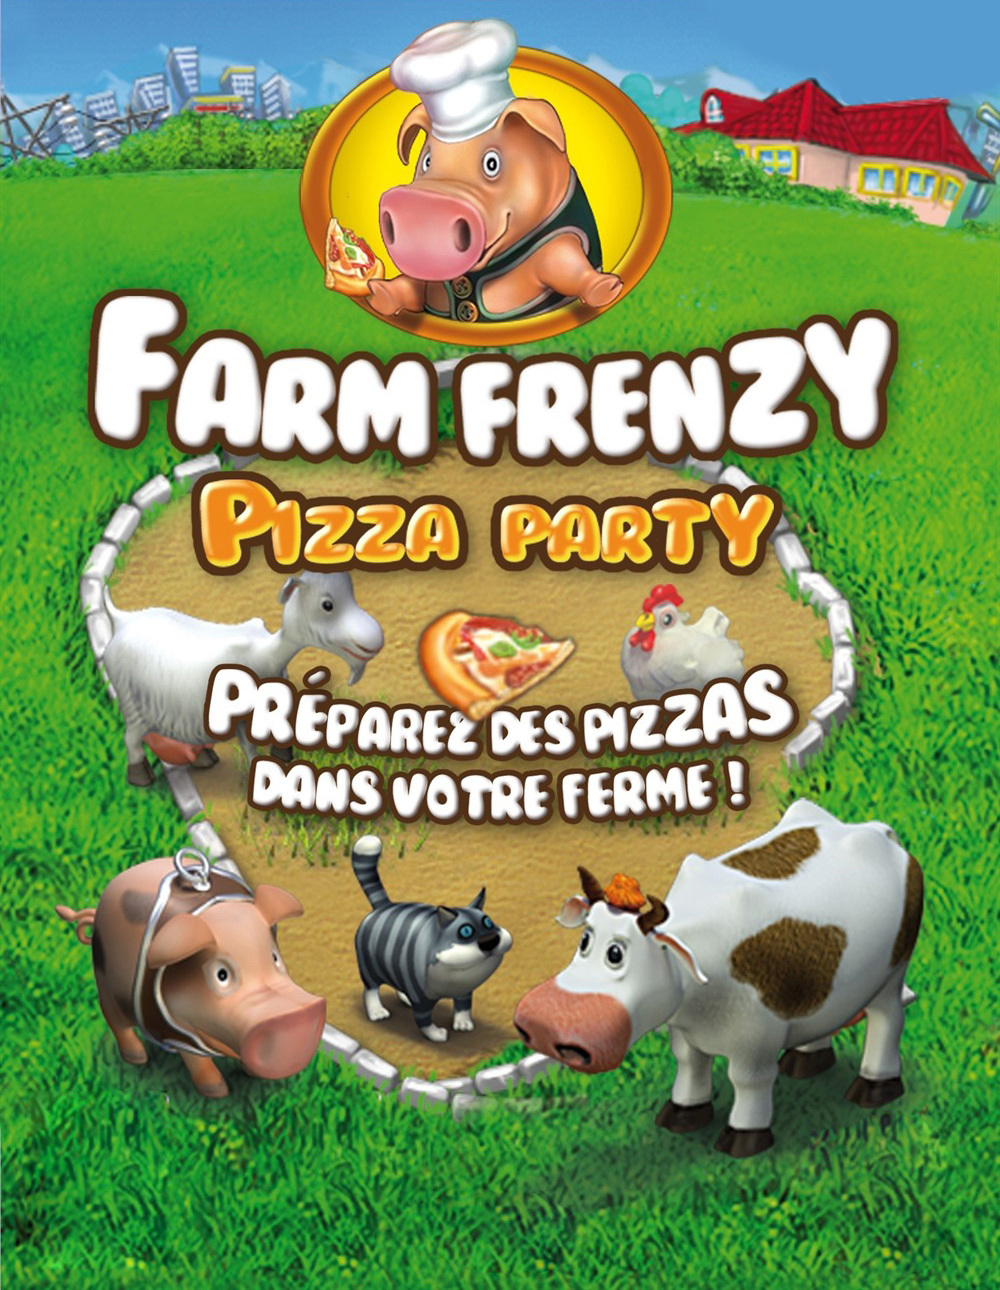 игра веселая ферма печем пиццу скачать бесплатно полная версия фото 69